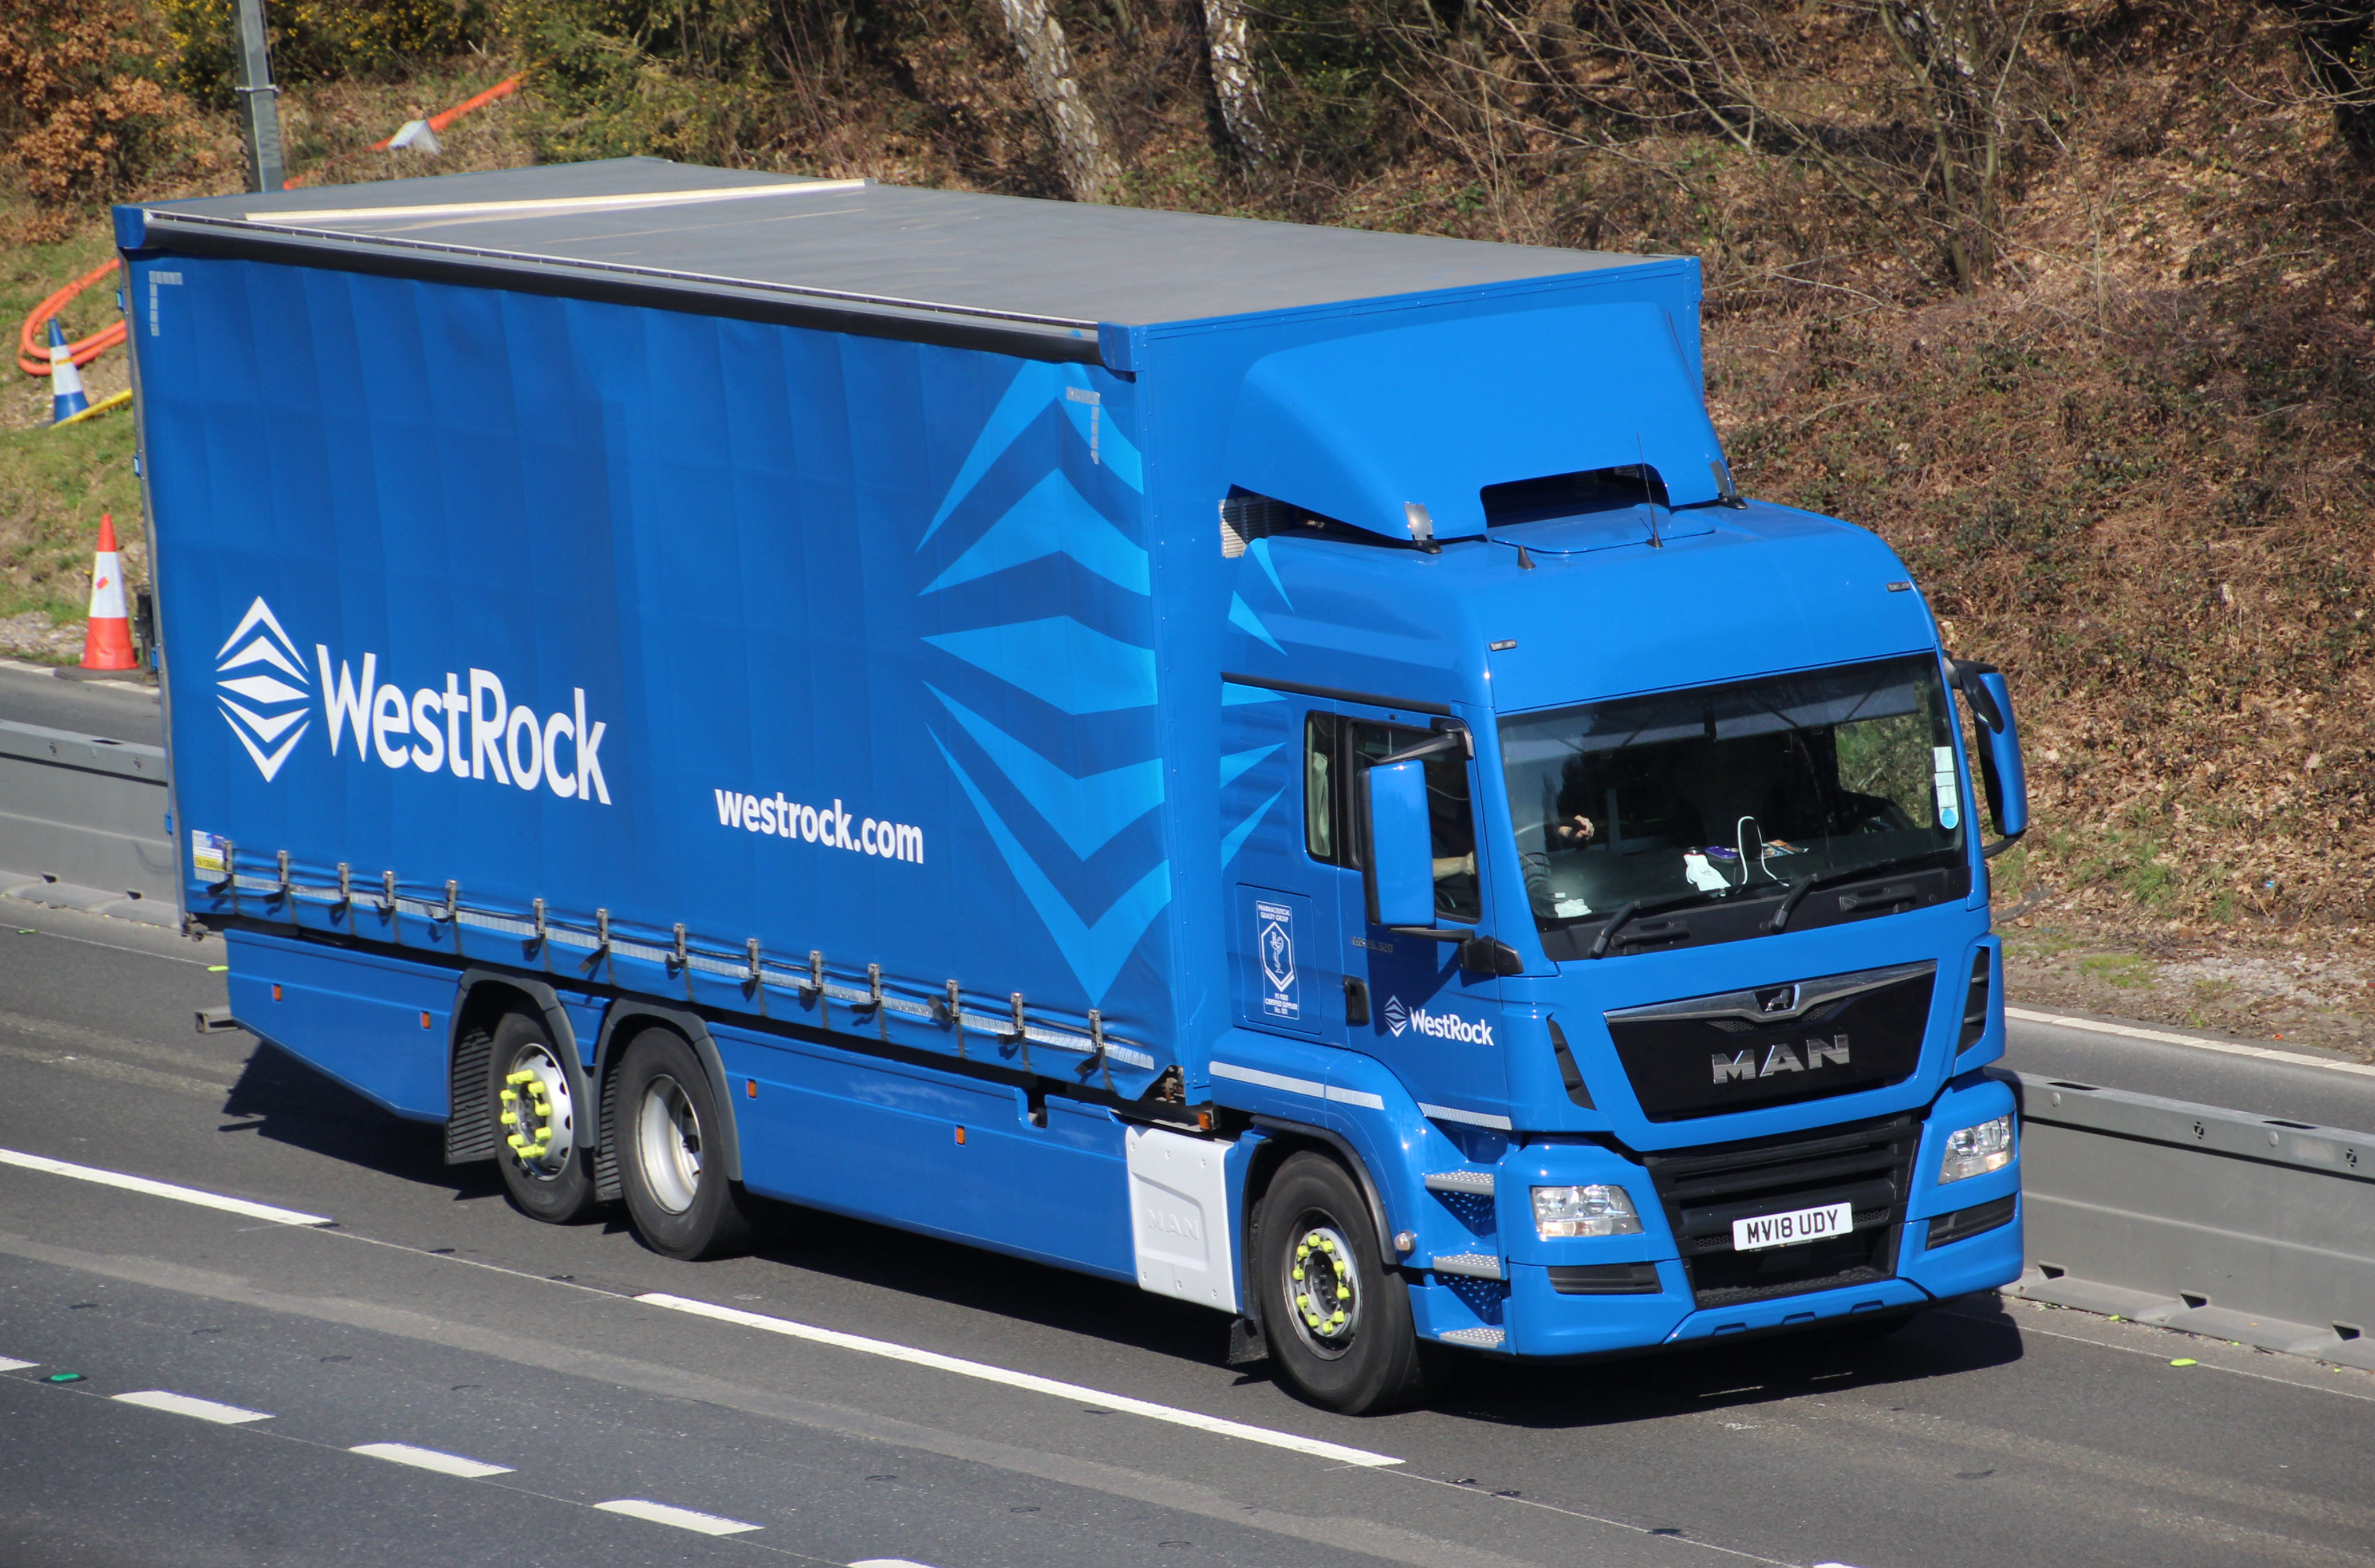 WestRock lorry credit EDDIE CC BY 20